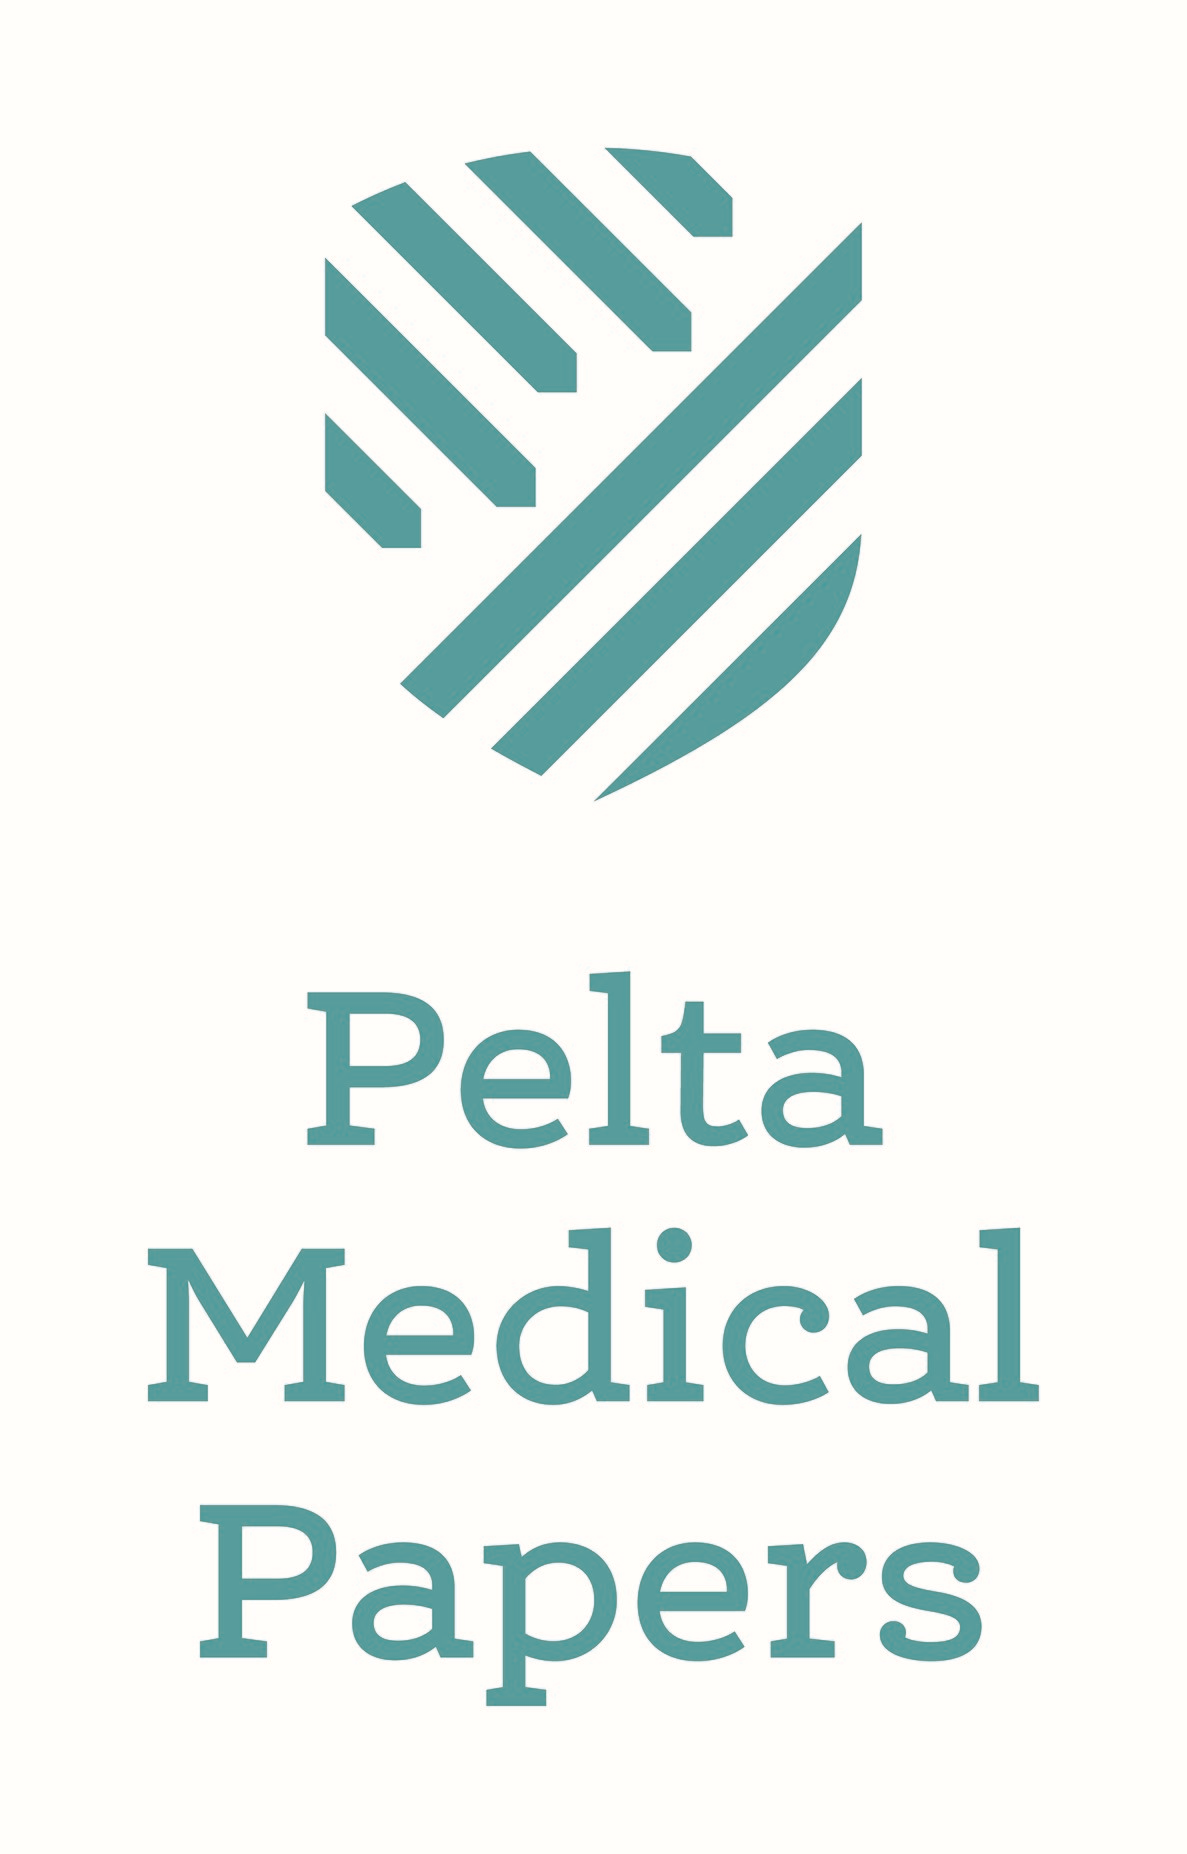 Pelta Medical Papers Ltd.